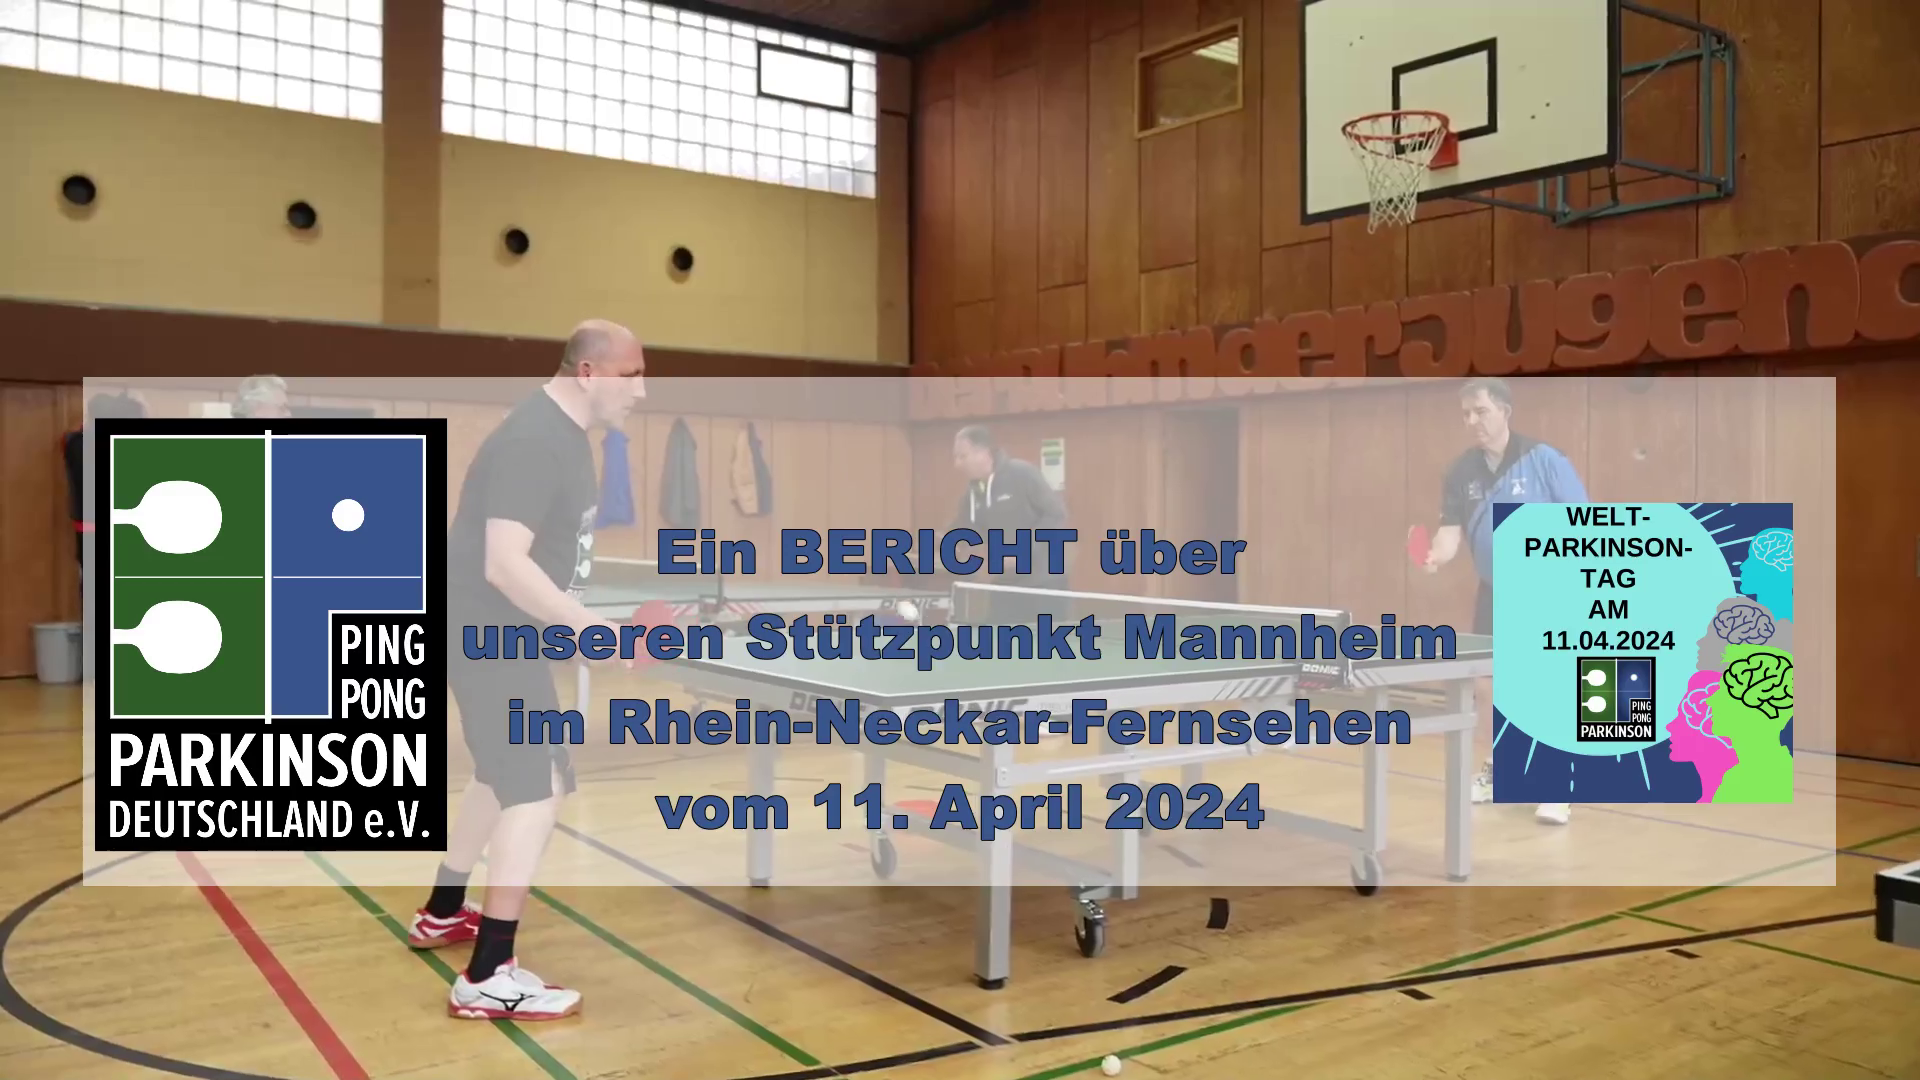 Ein BERICHT über unseren Stützpunkt Mannheim im Rhein-Neckar-Fernsehen vom 11. April 2024